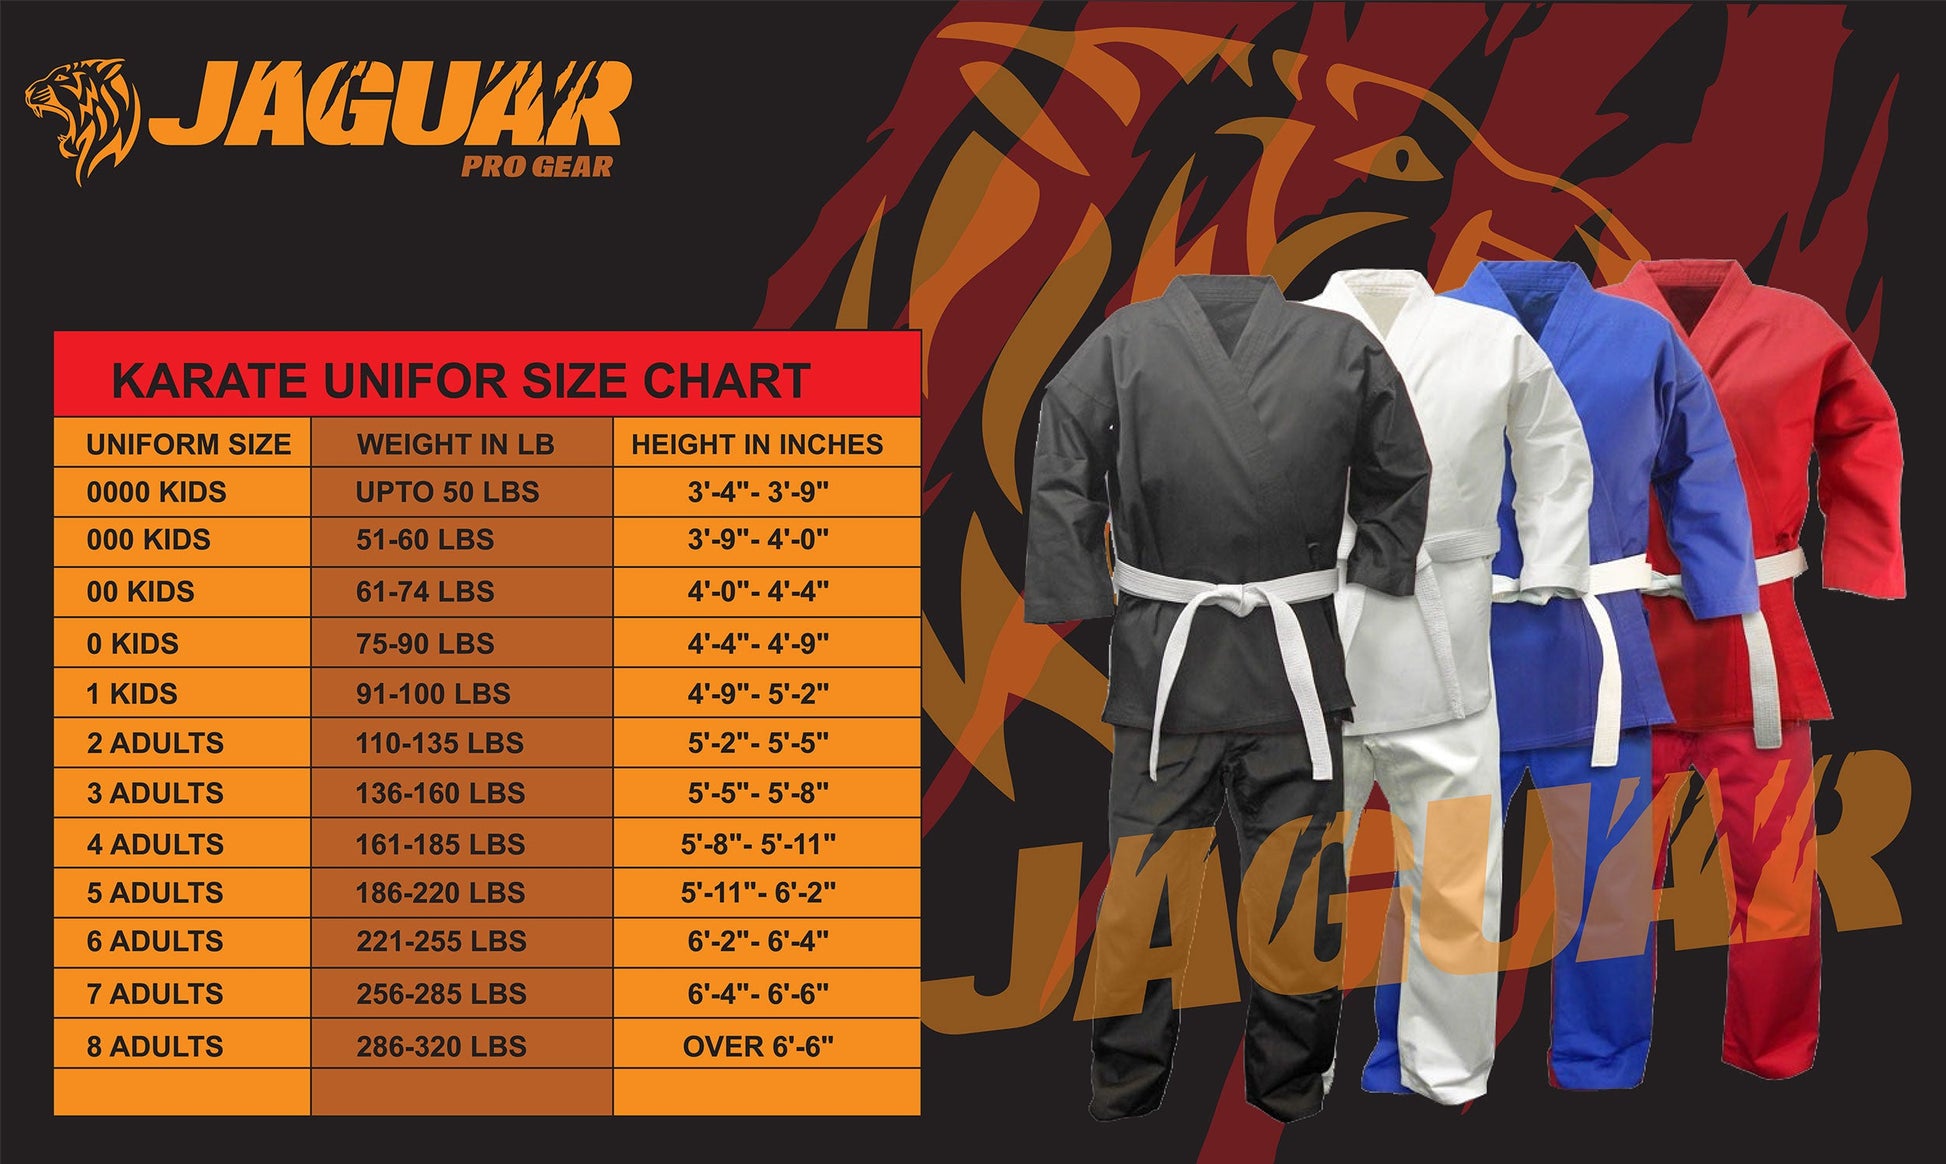 Jaguar Pro Gear Karate Uniform